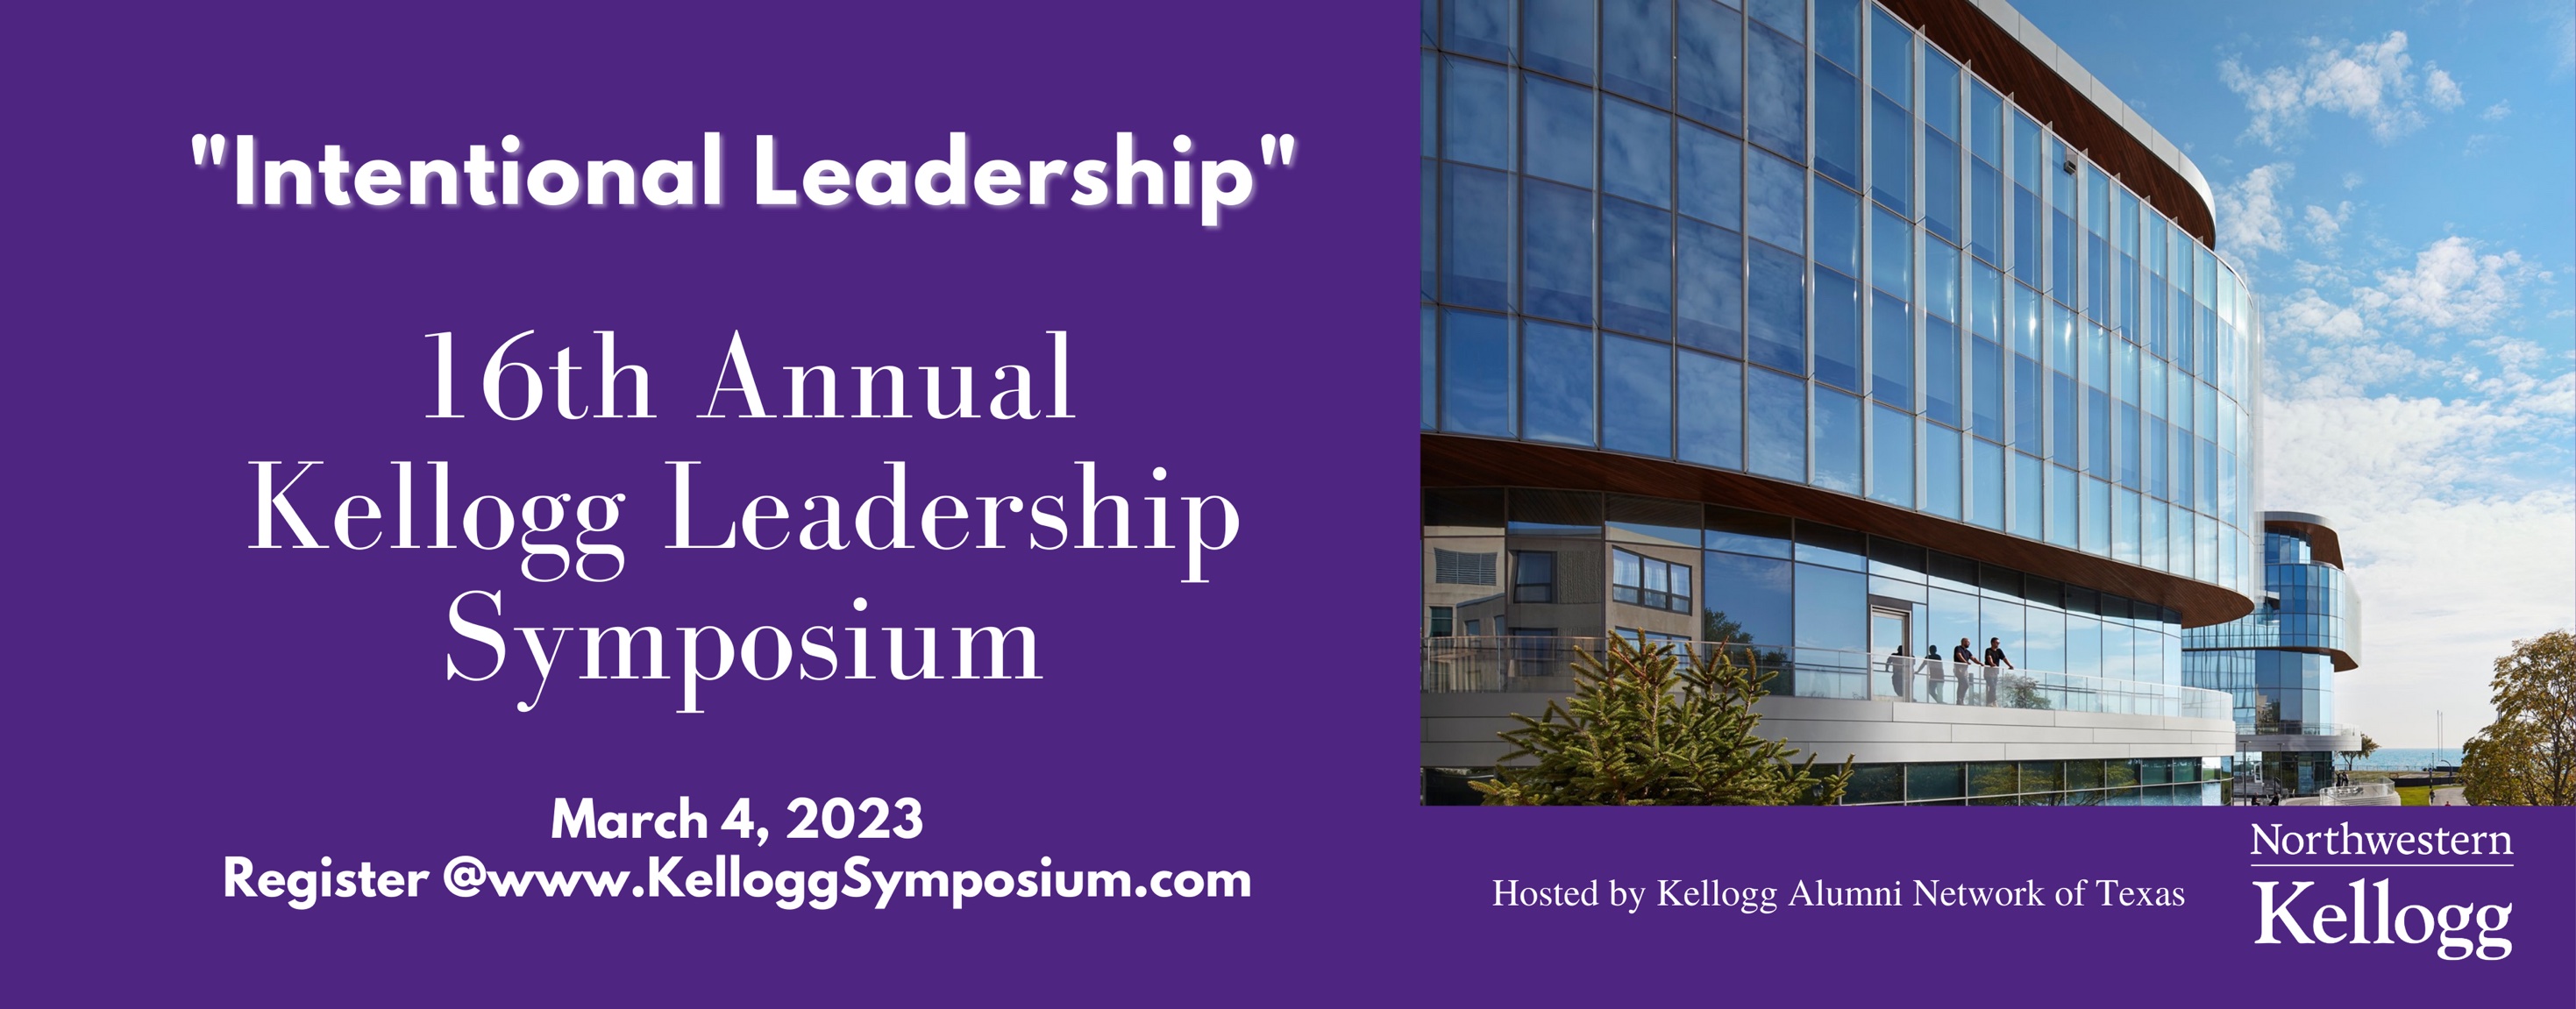 kellogg-leadership-symposium